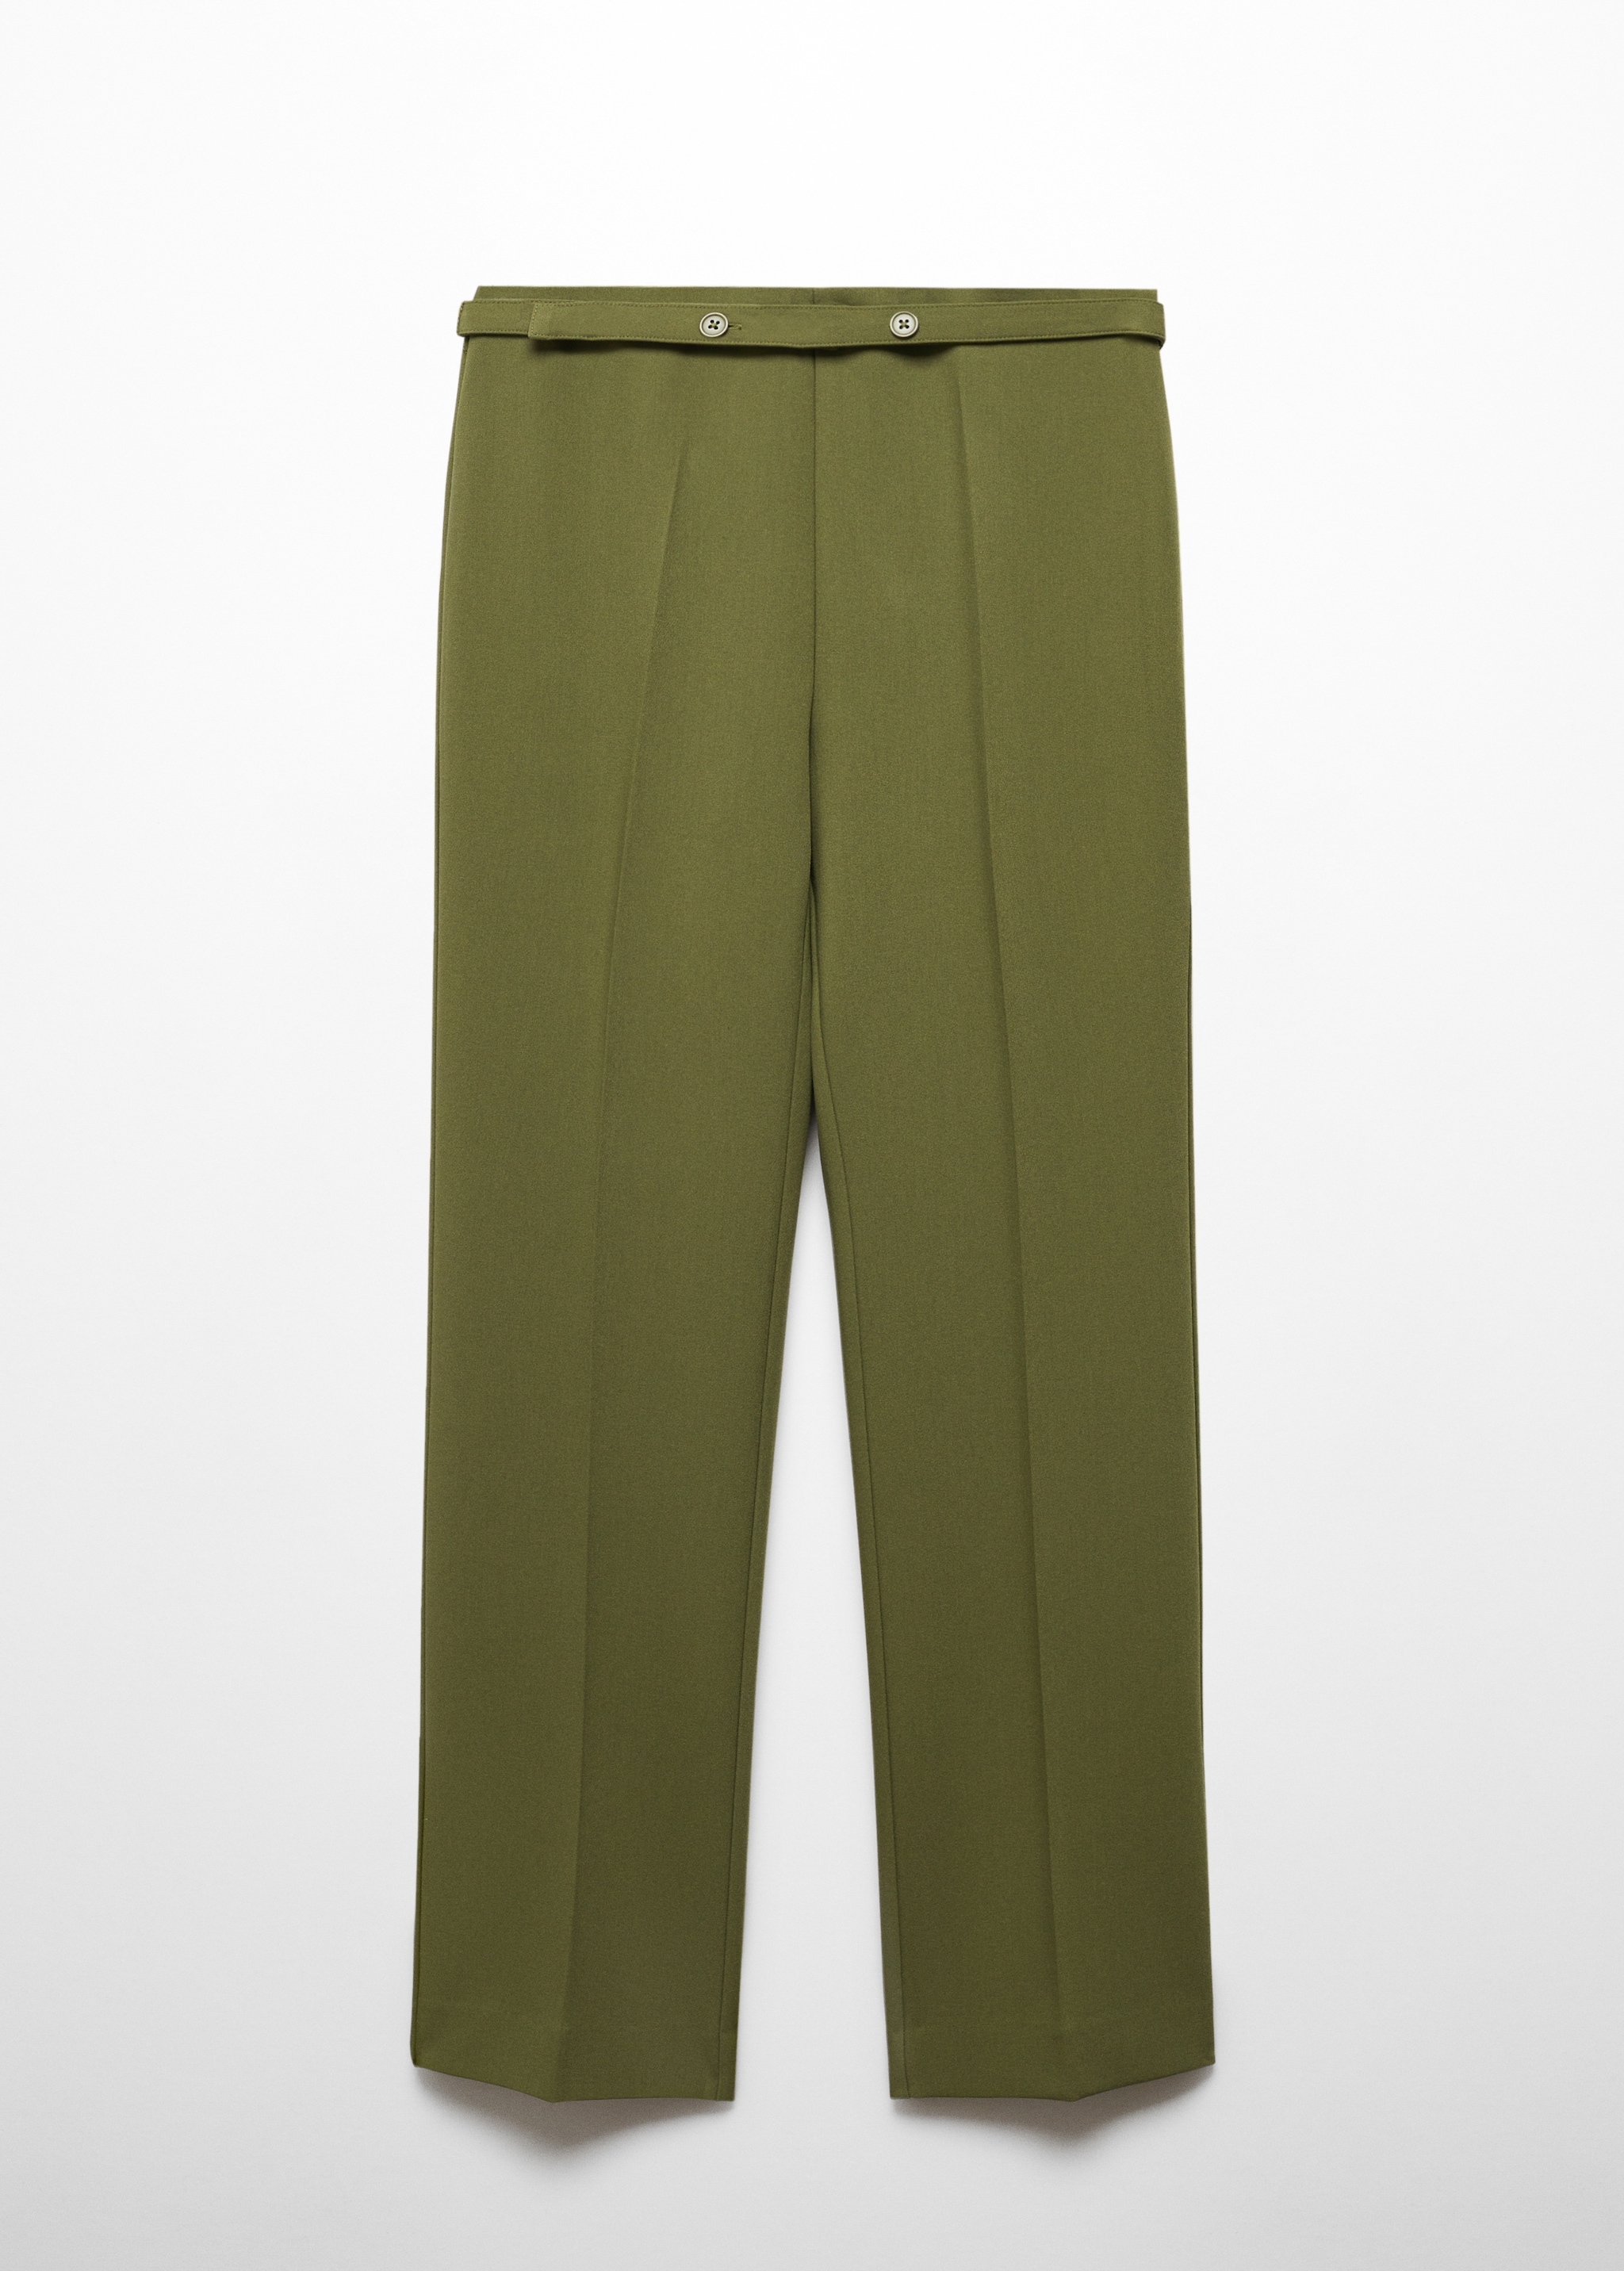 Pantalon droit avec ceinture - Article sans modèle